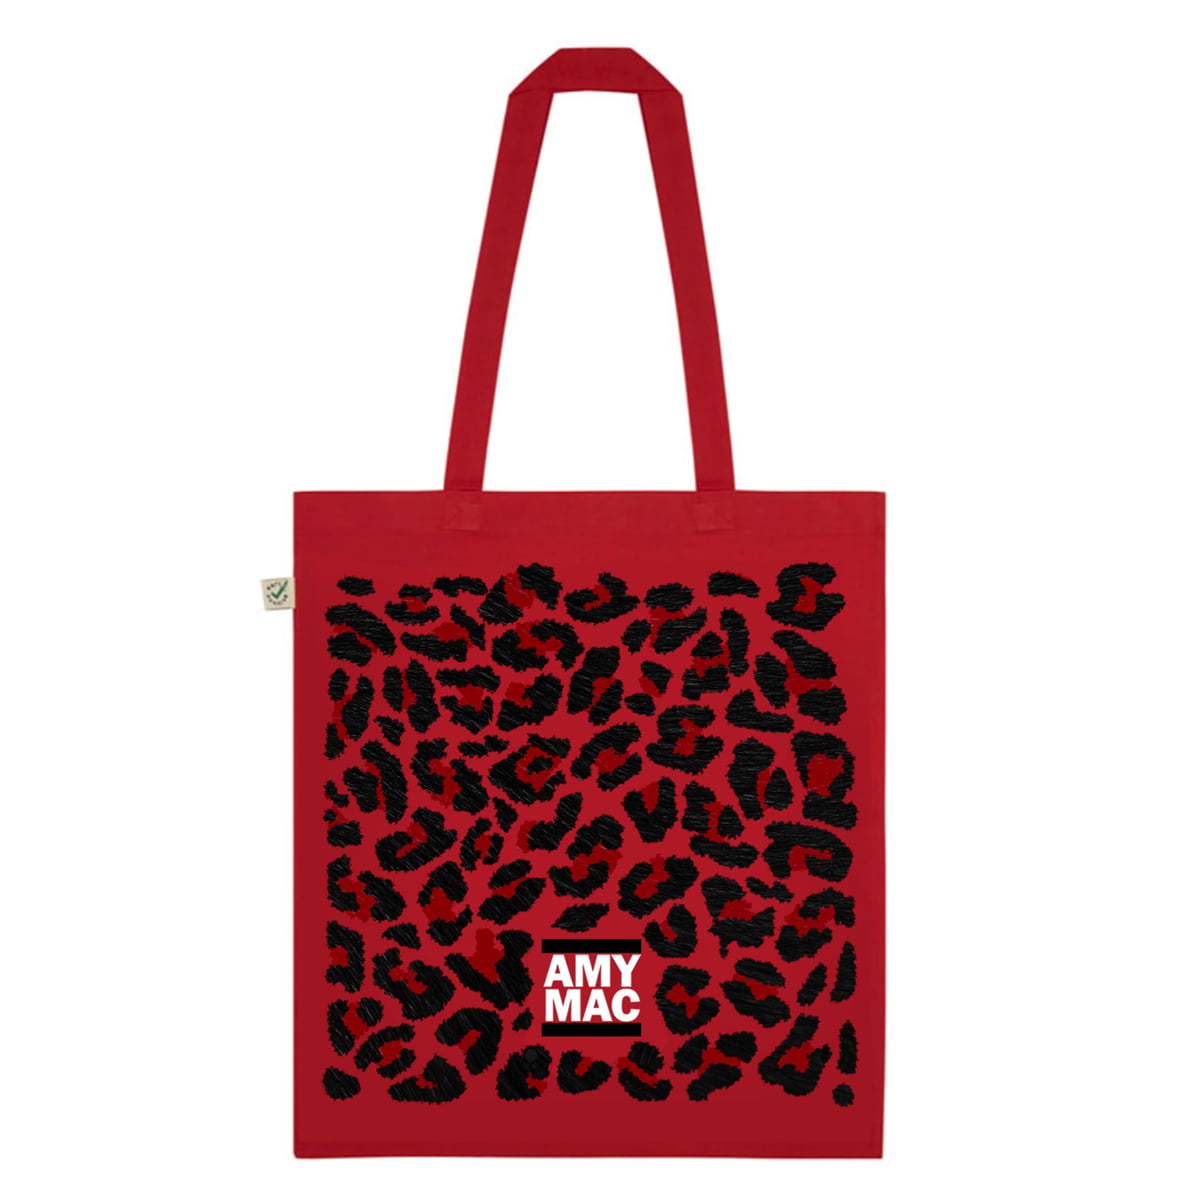 Amy Macdonald - Amy Mac Leopard Tote Bag -              Tote Bag